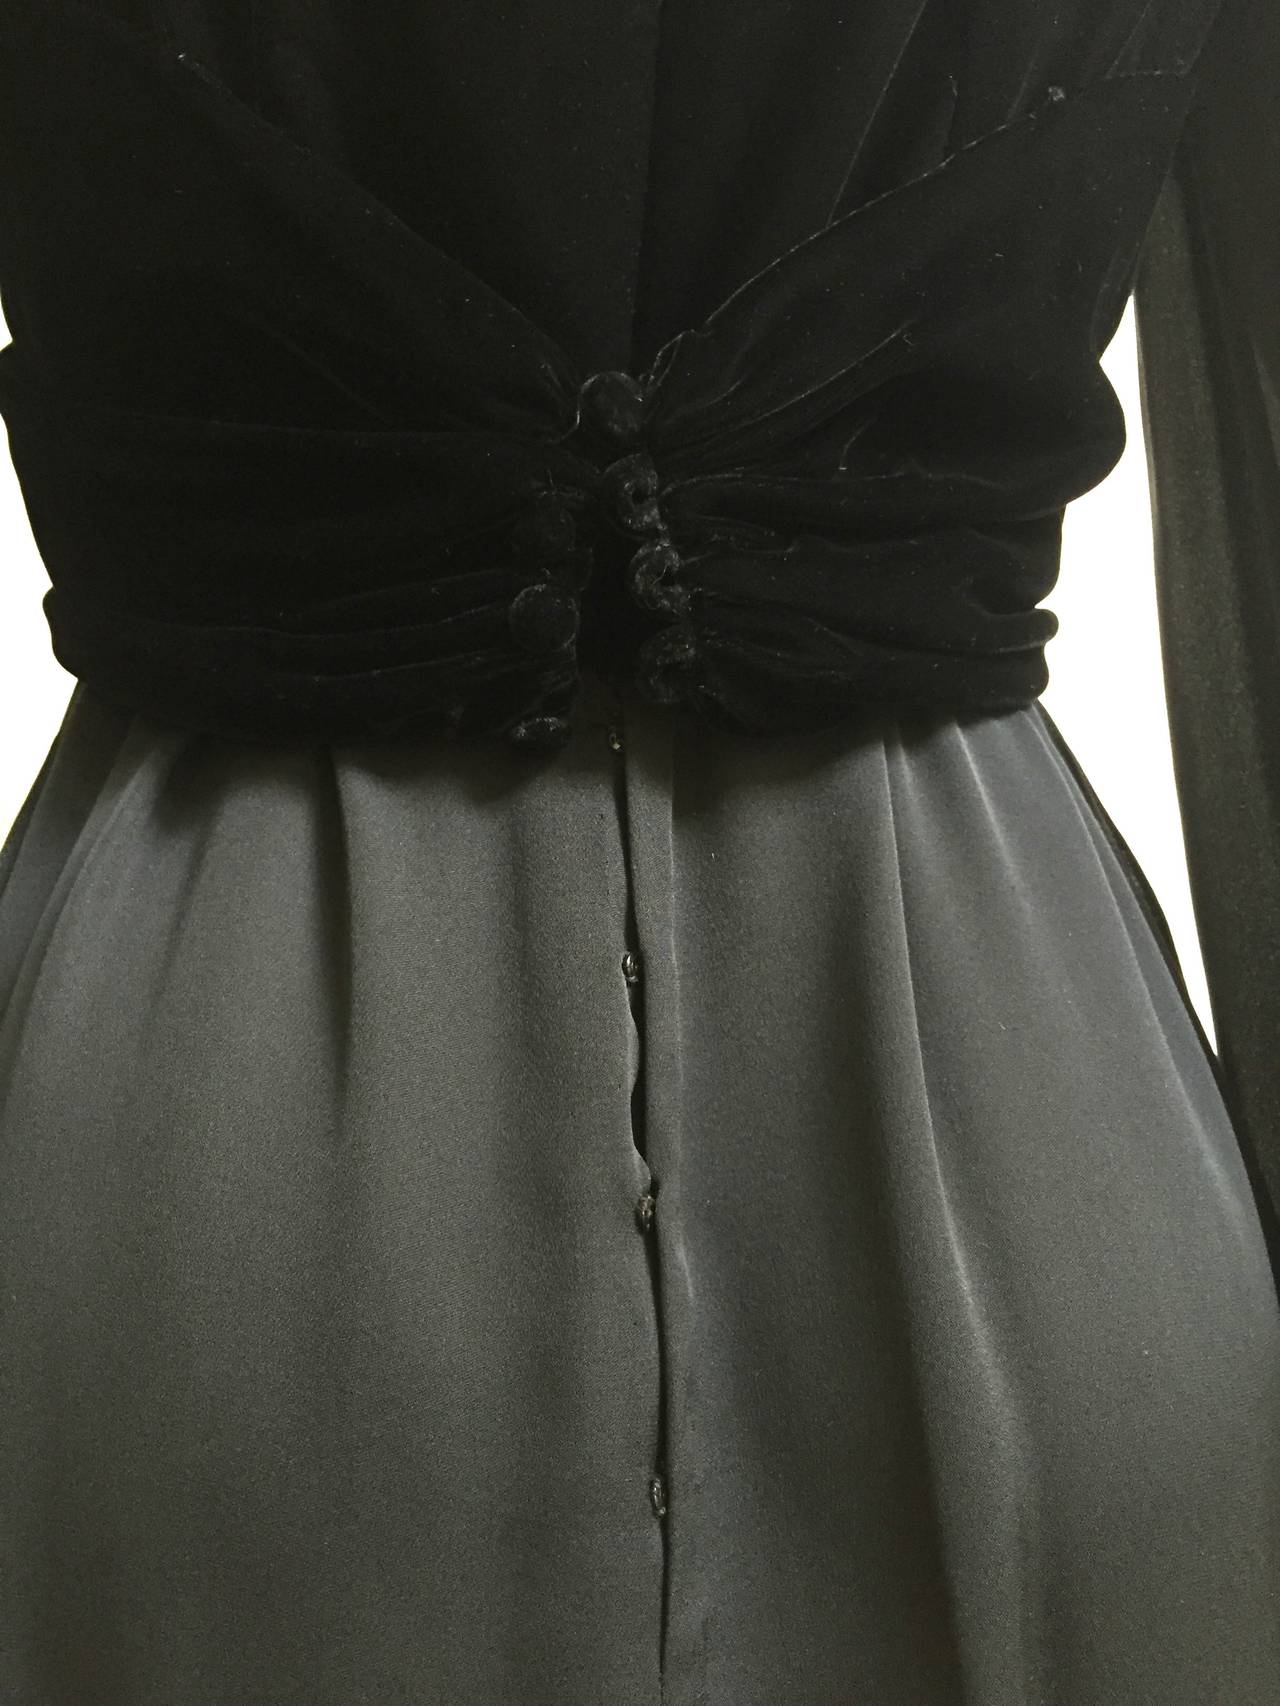 Women's Bill Blass for Saks 1980s Black Chiffon & Velvet Evening Dress Size 4/6. For Sale